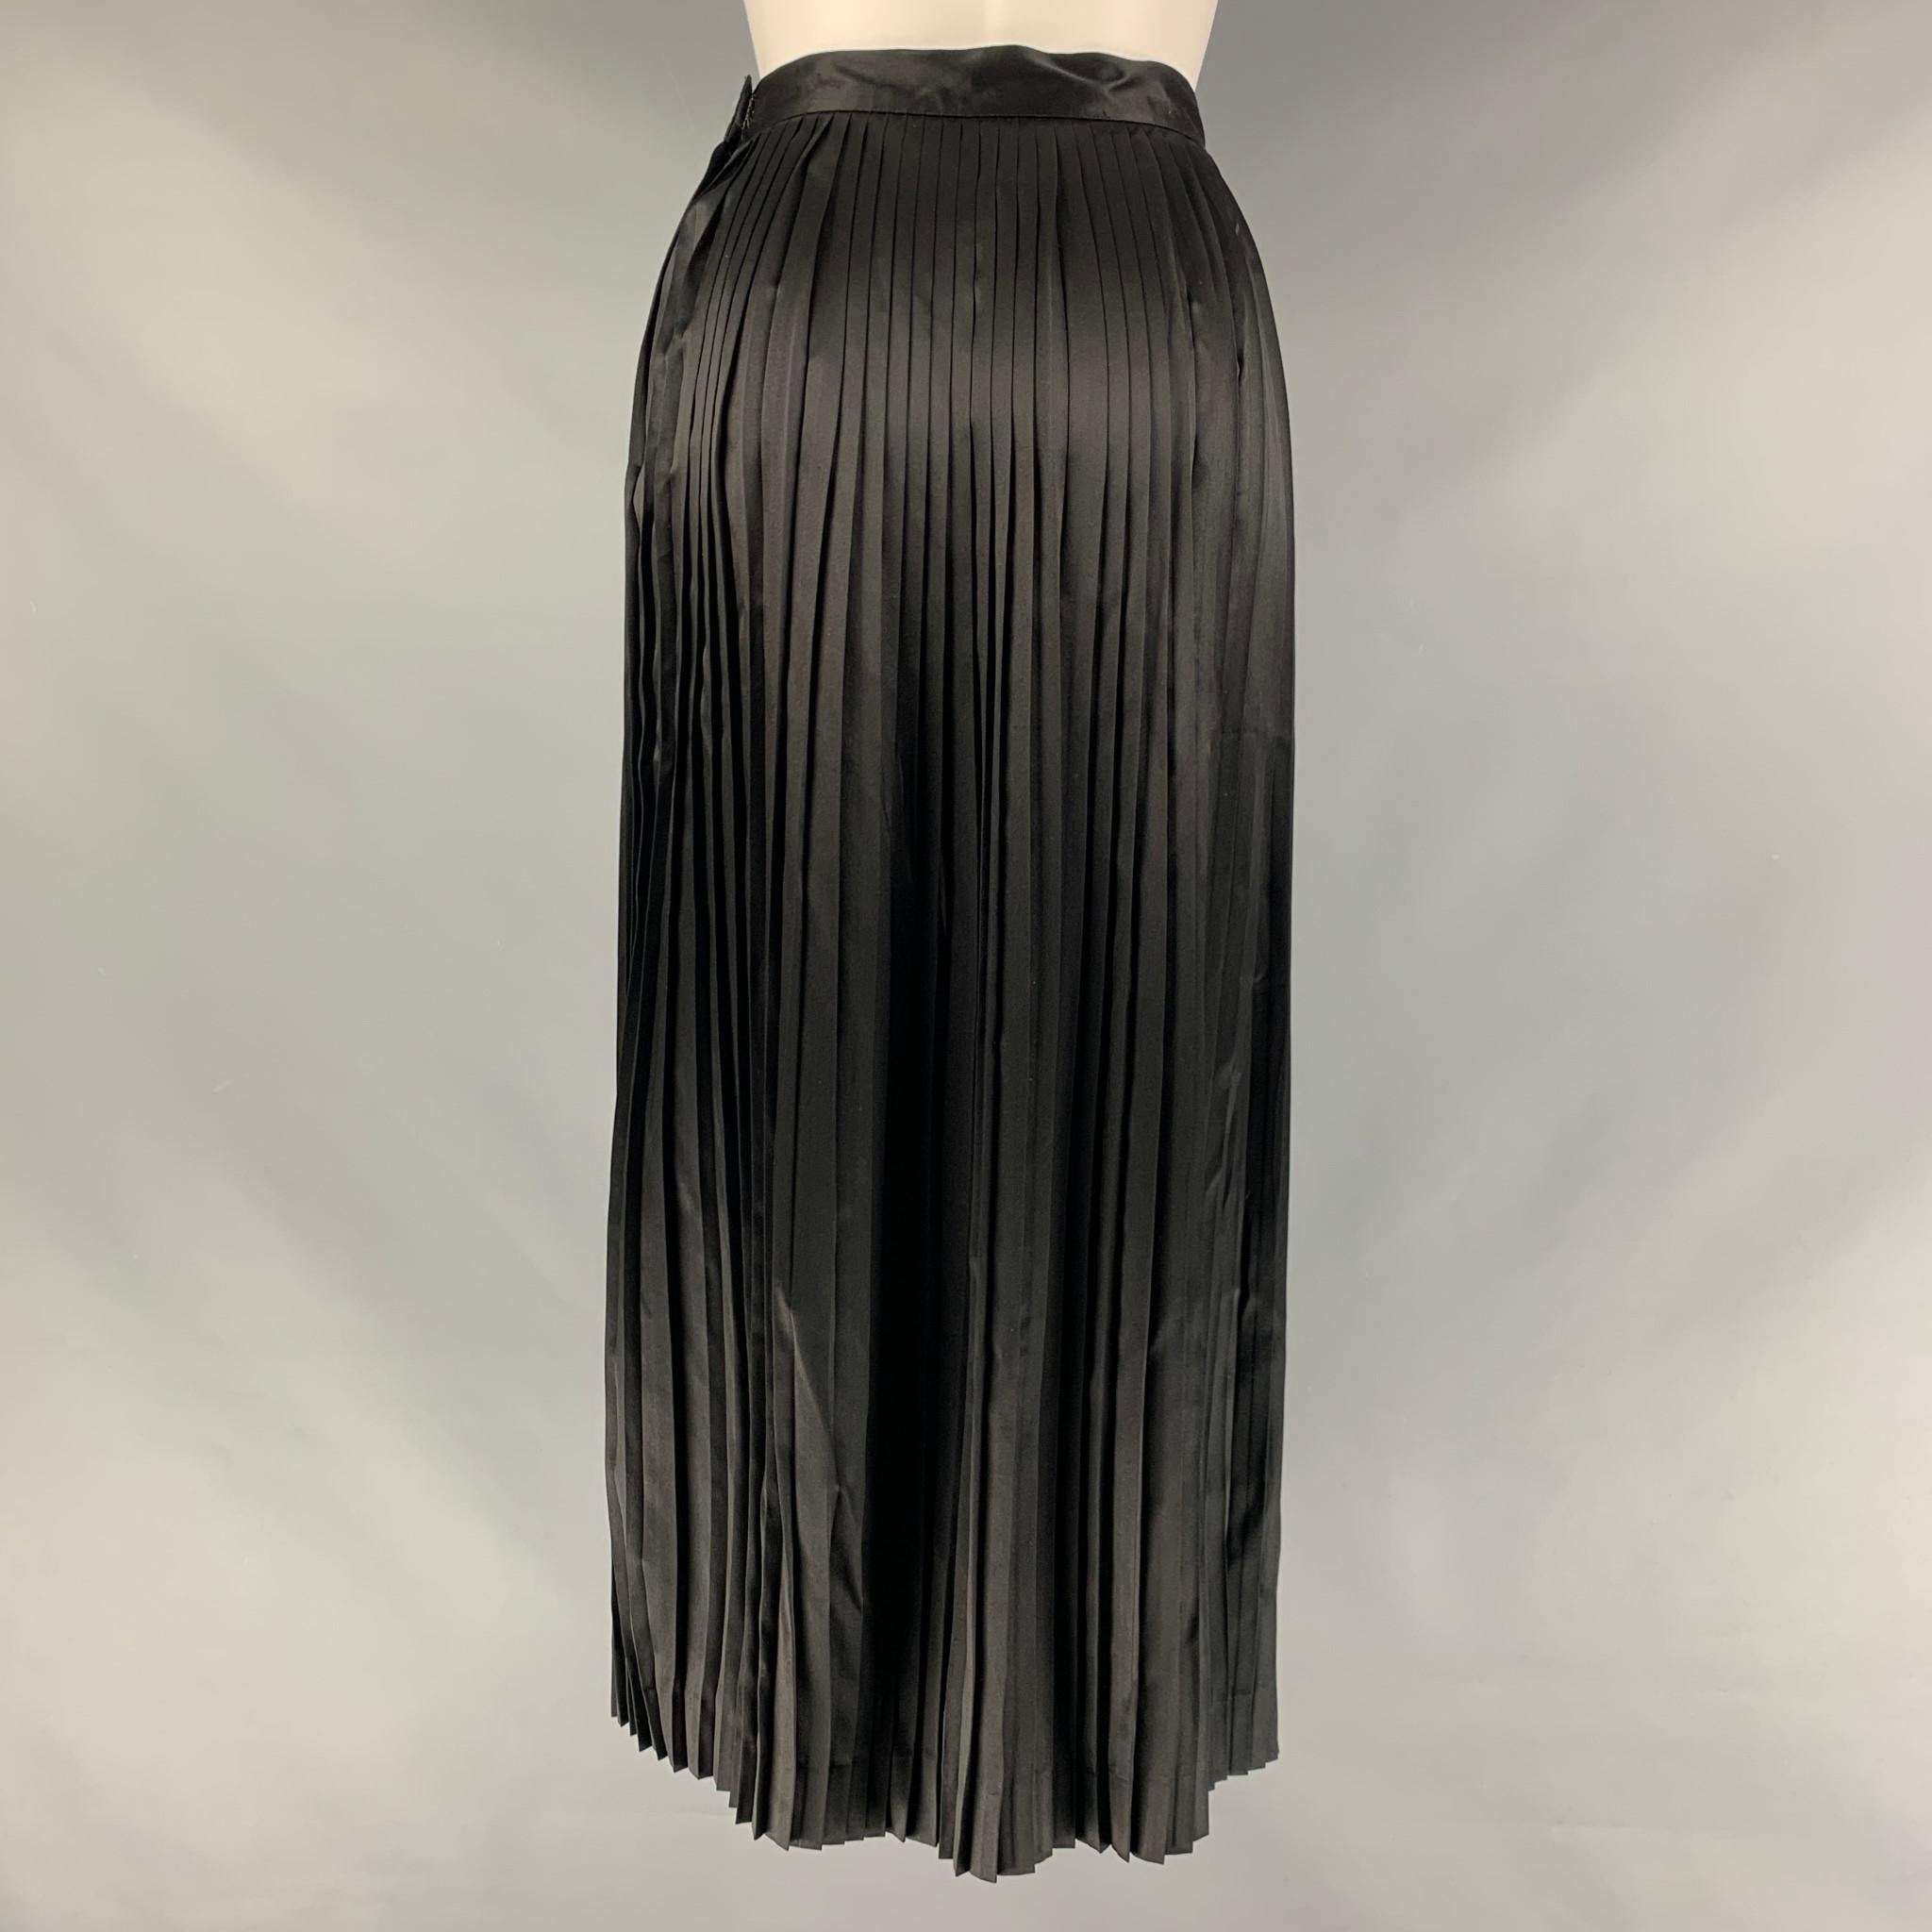 mid calf black skirt